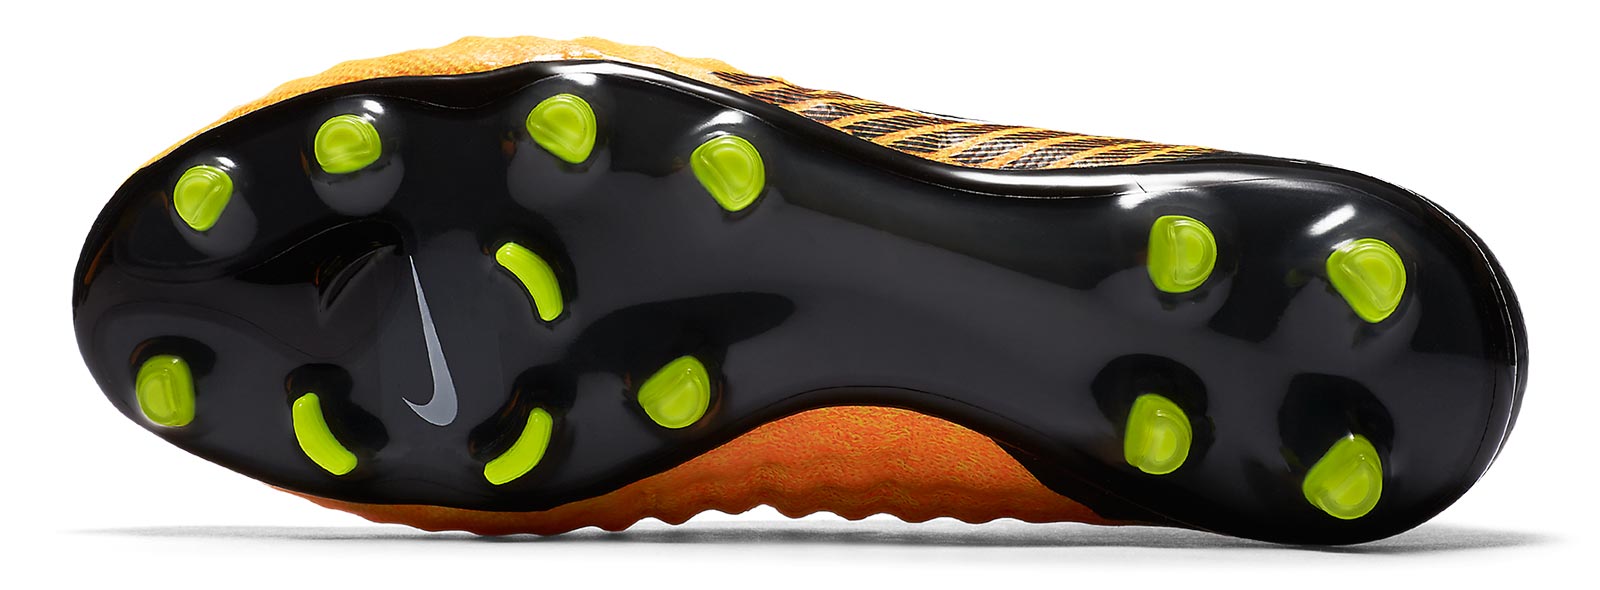 Nike Magista Obra II Sg pro Soccer Cleats Flyknit ACC Size 7